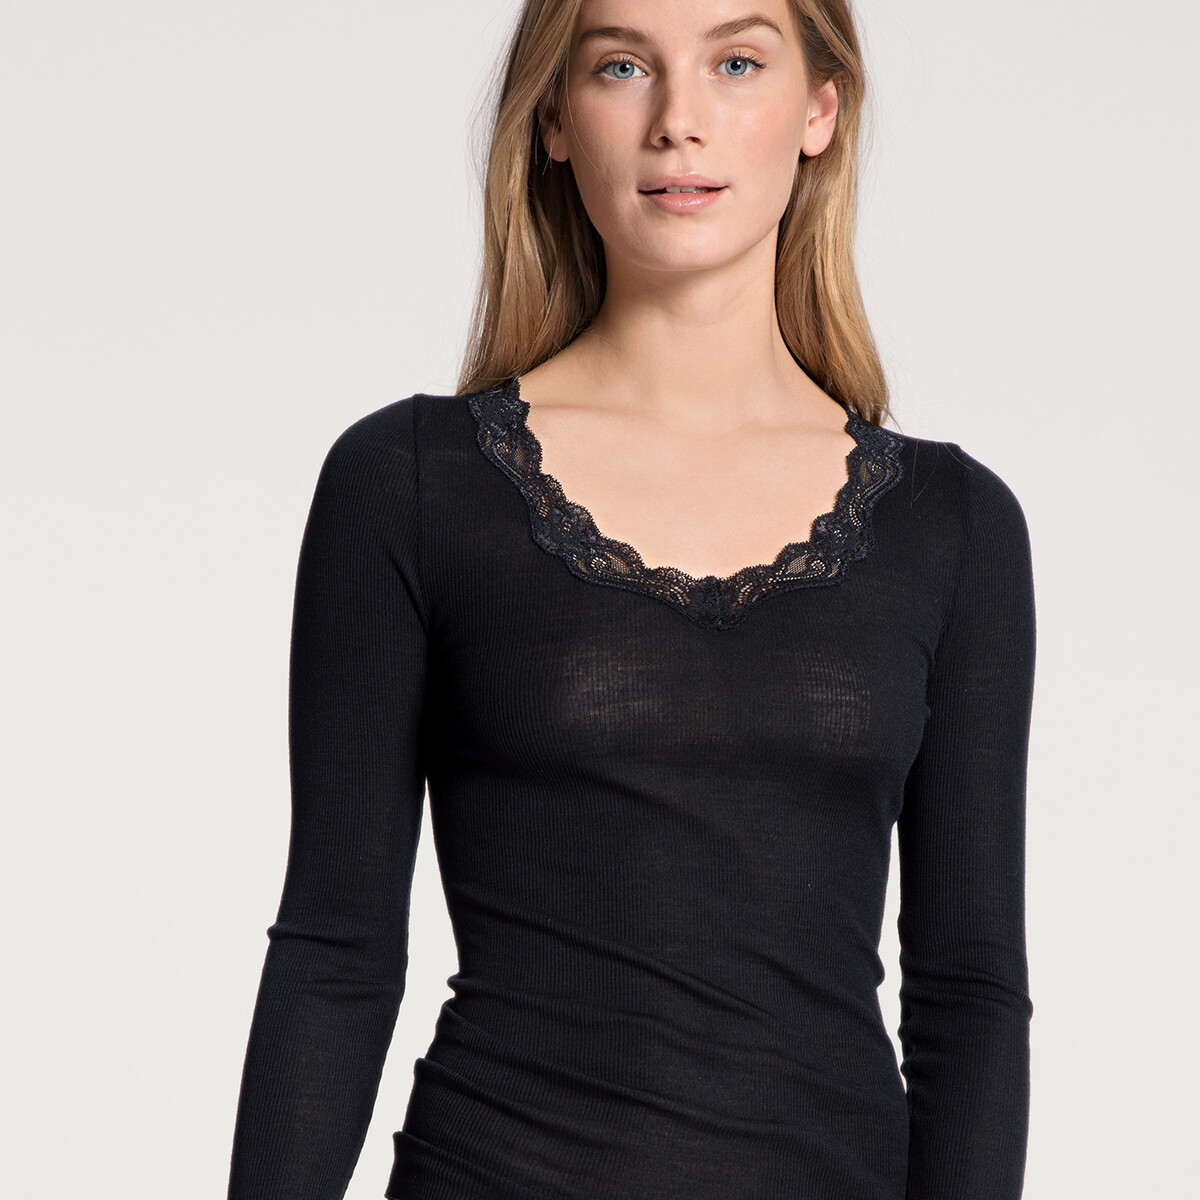 Calida Bluse, Farbe: Schwarz, Größe: XS, Damen von Calida